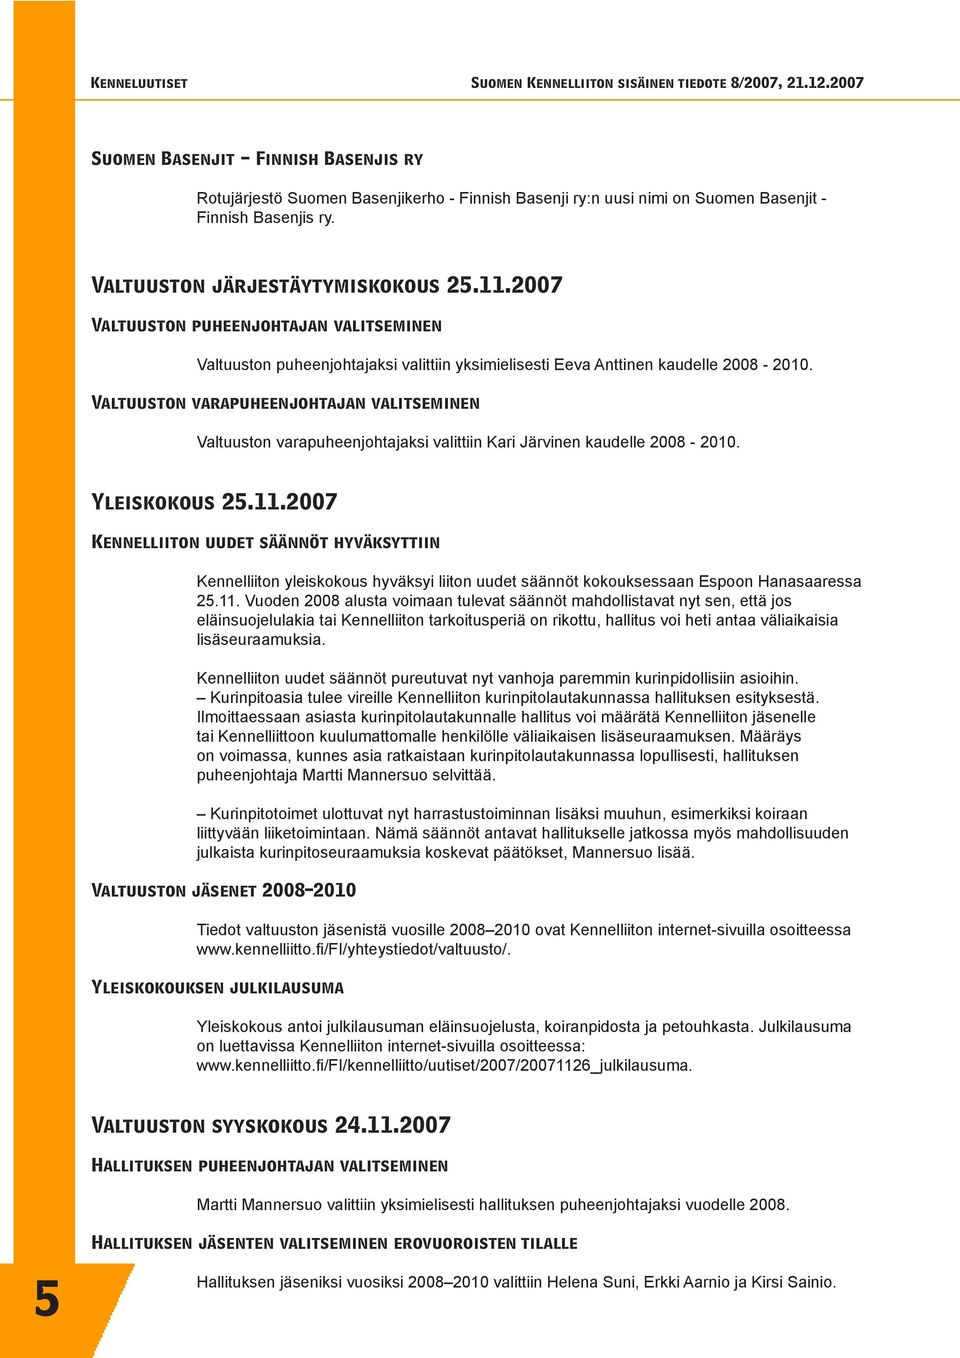 Valtuuston varapuheenjohtajan valitseminen Valtuuston varapuheenjohtajaksi valittiin Kari Järvinen kaudelle 2008-2010. Yleiskokous 25.11.